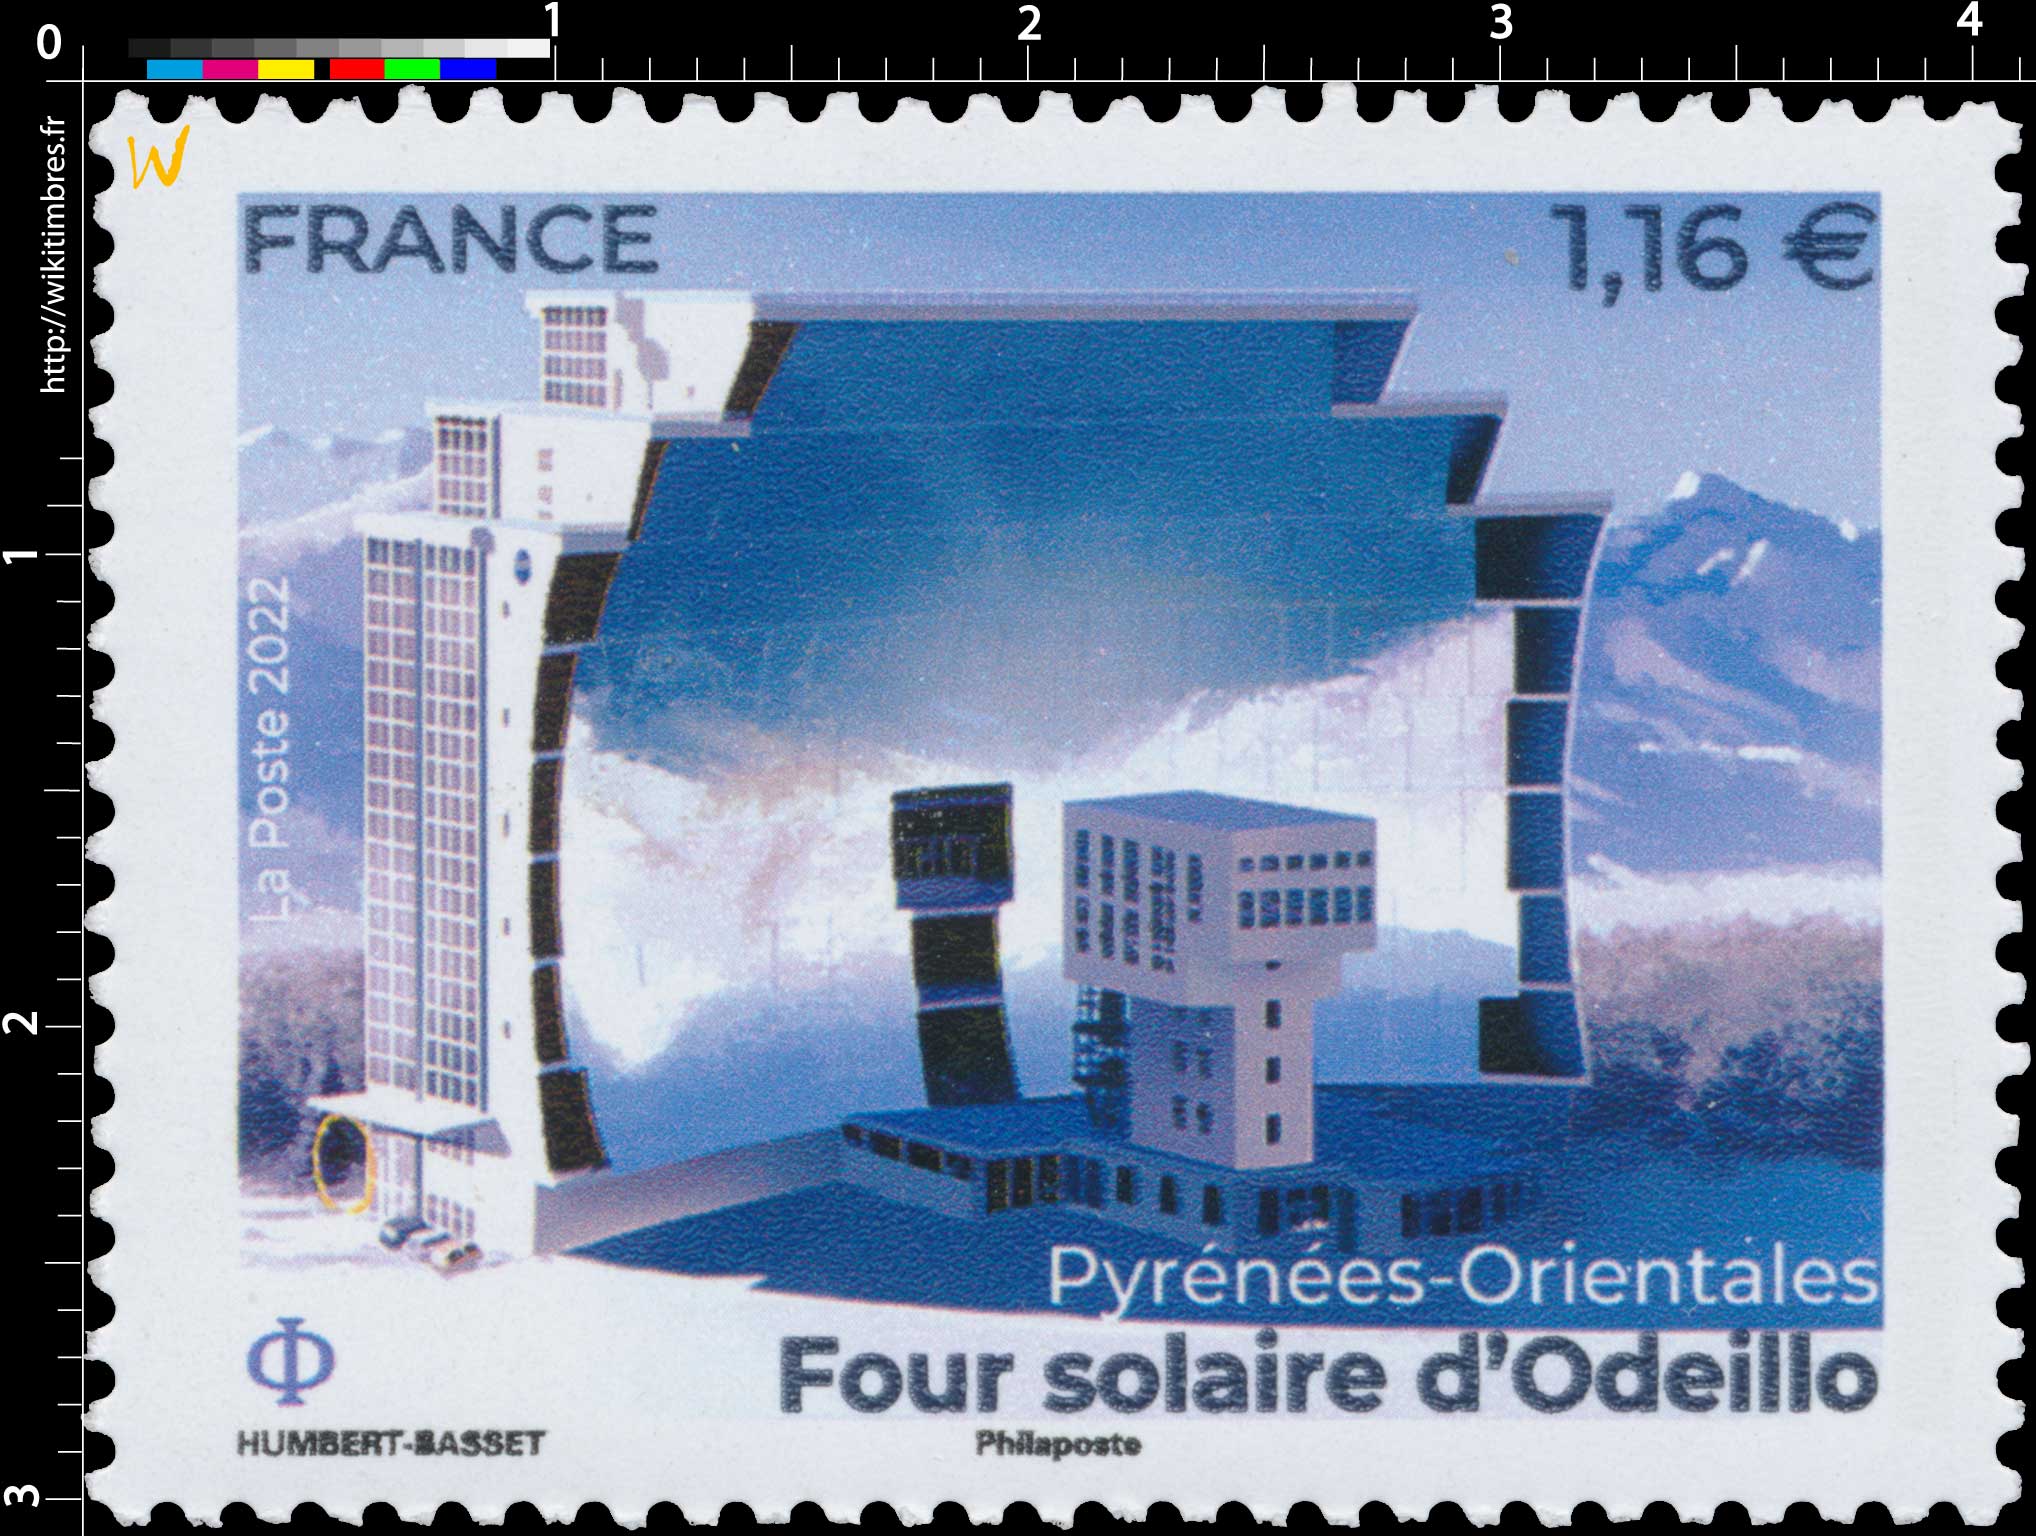 2022 FOUR SOLAIRE D’ODEILLO Pyrénées-Orientales